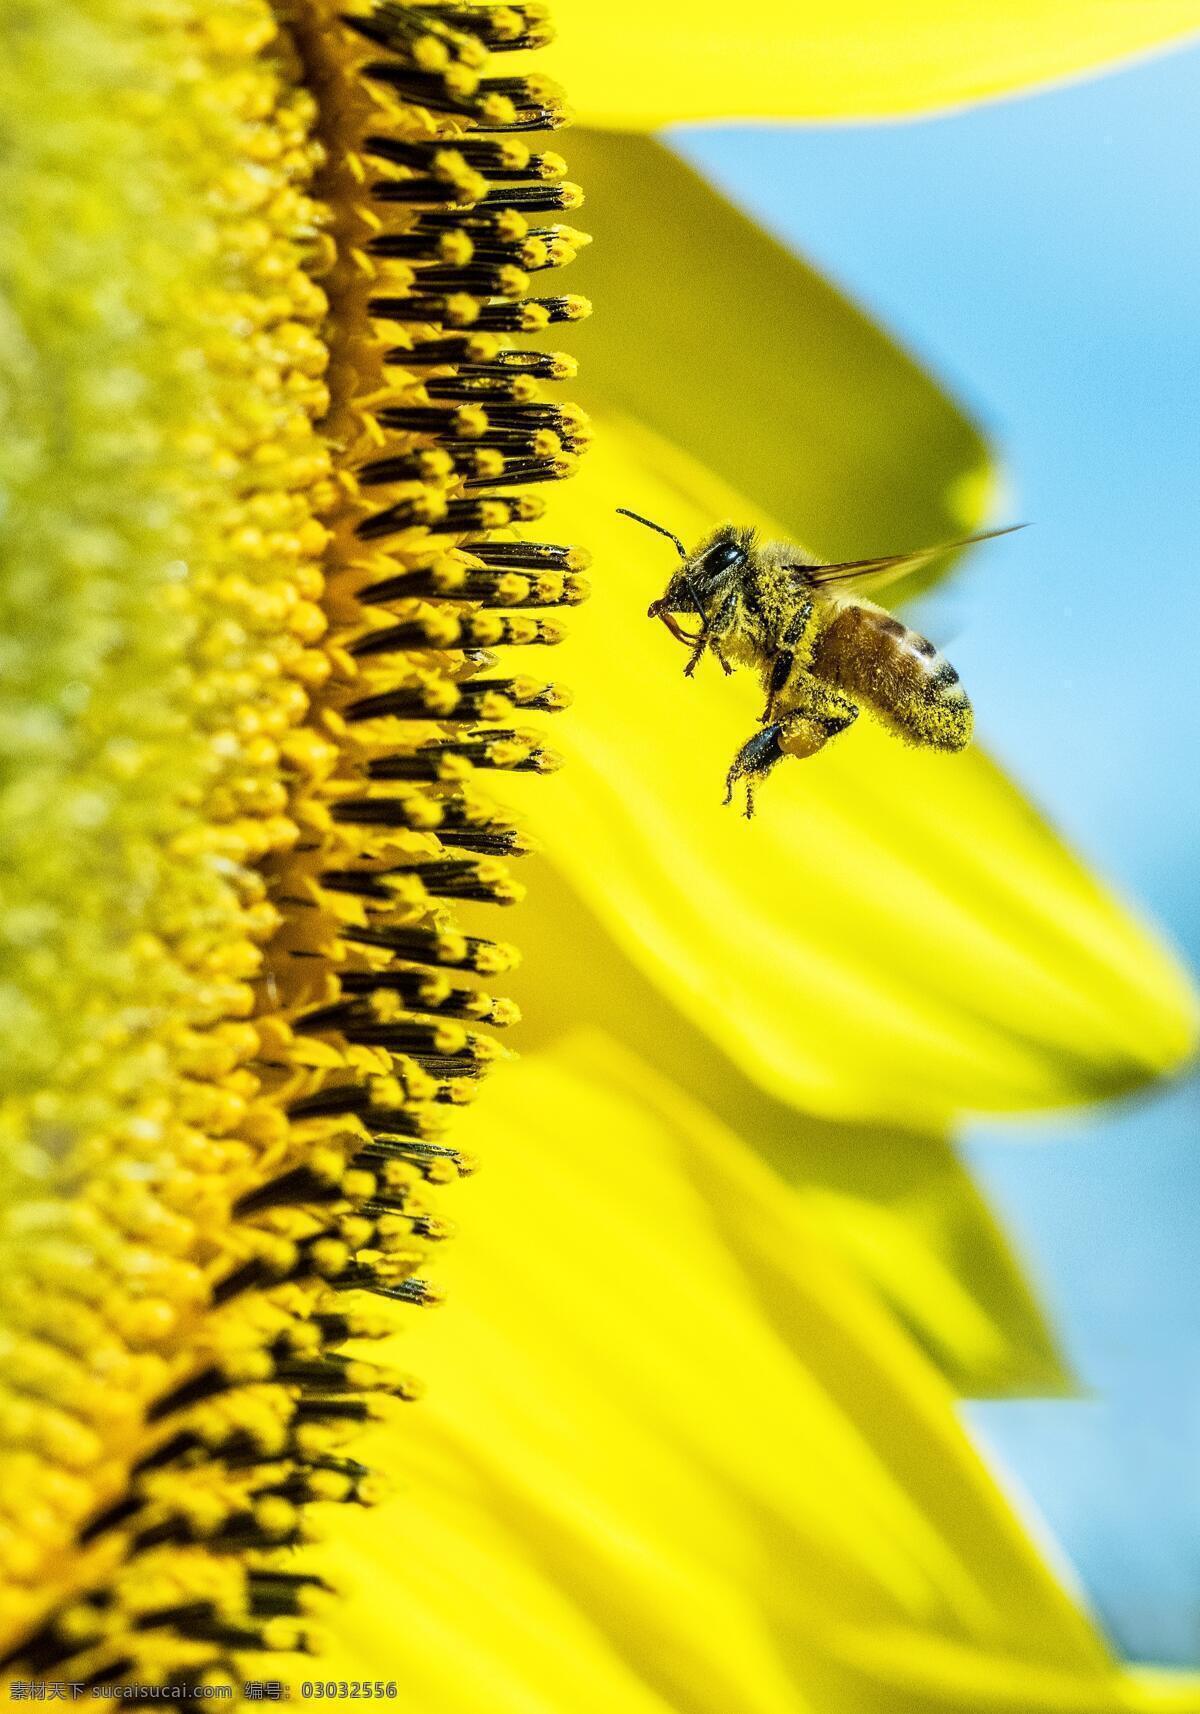 蜜蜂 采花 花朵 花卉 开放 微距摄影 小清新 唯美 生活百科 生活素材 生物世界 昆虫